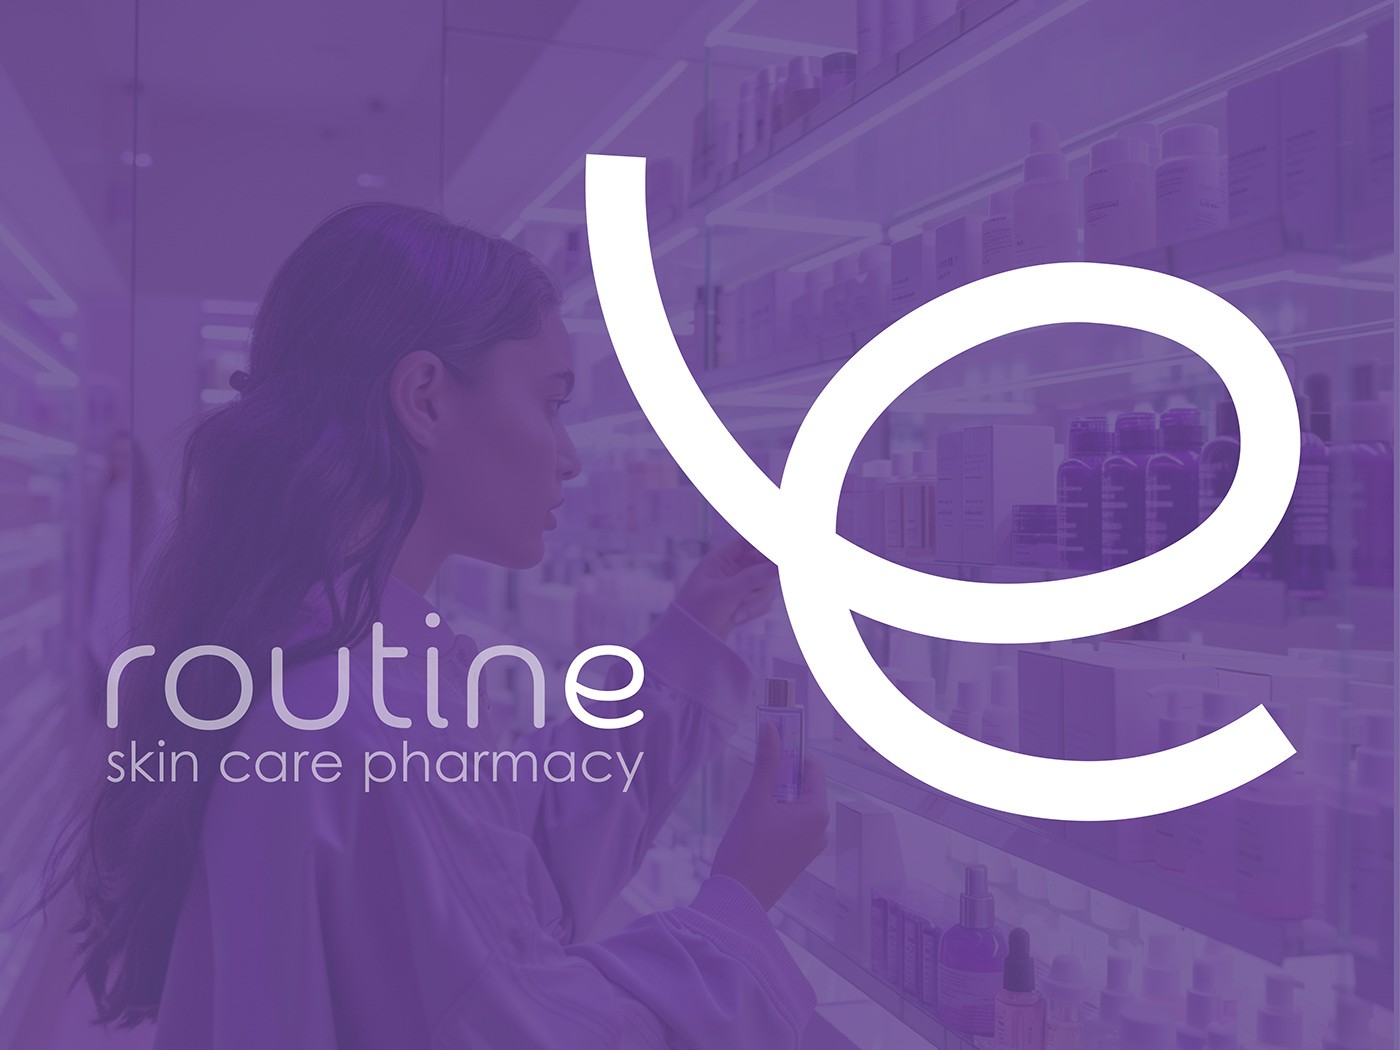 pharmacy skincare skin care branding  identity design logo drugstore brand identity